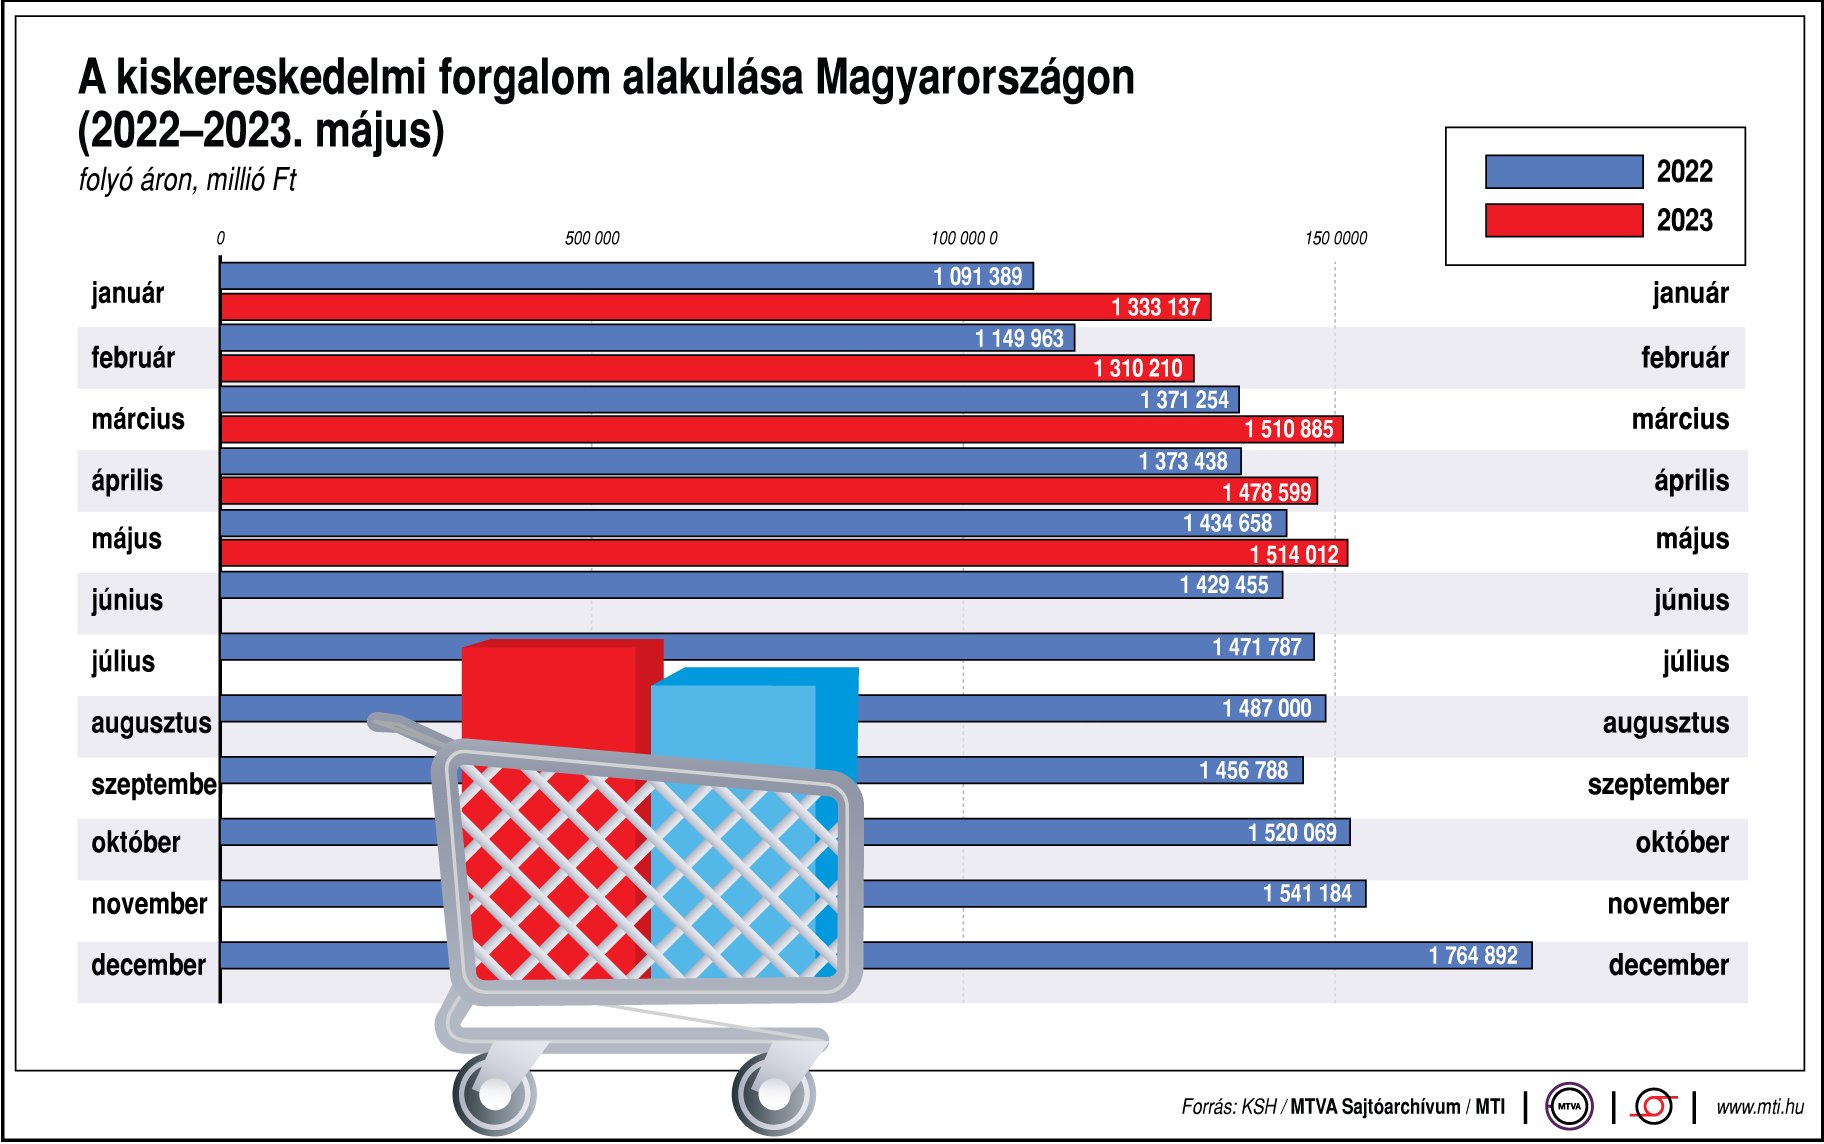 A kiskereskedelmi forgalom alakulása Magyarországon (2022-2023. május)